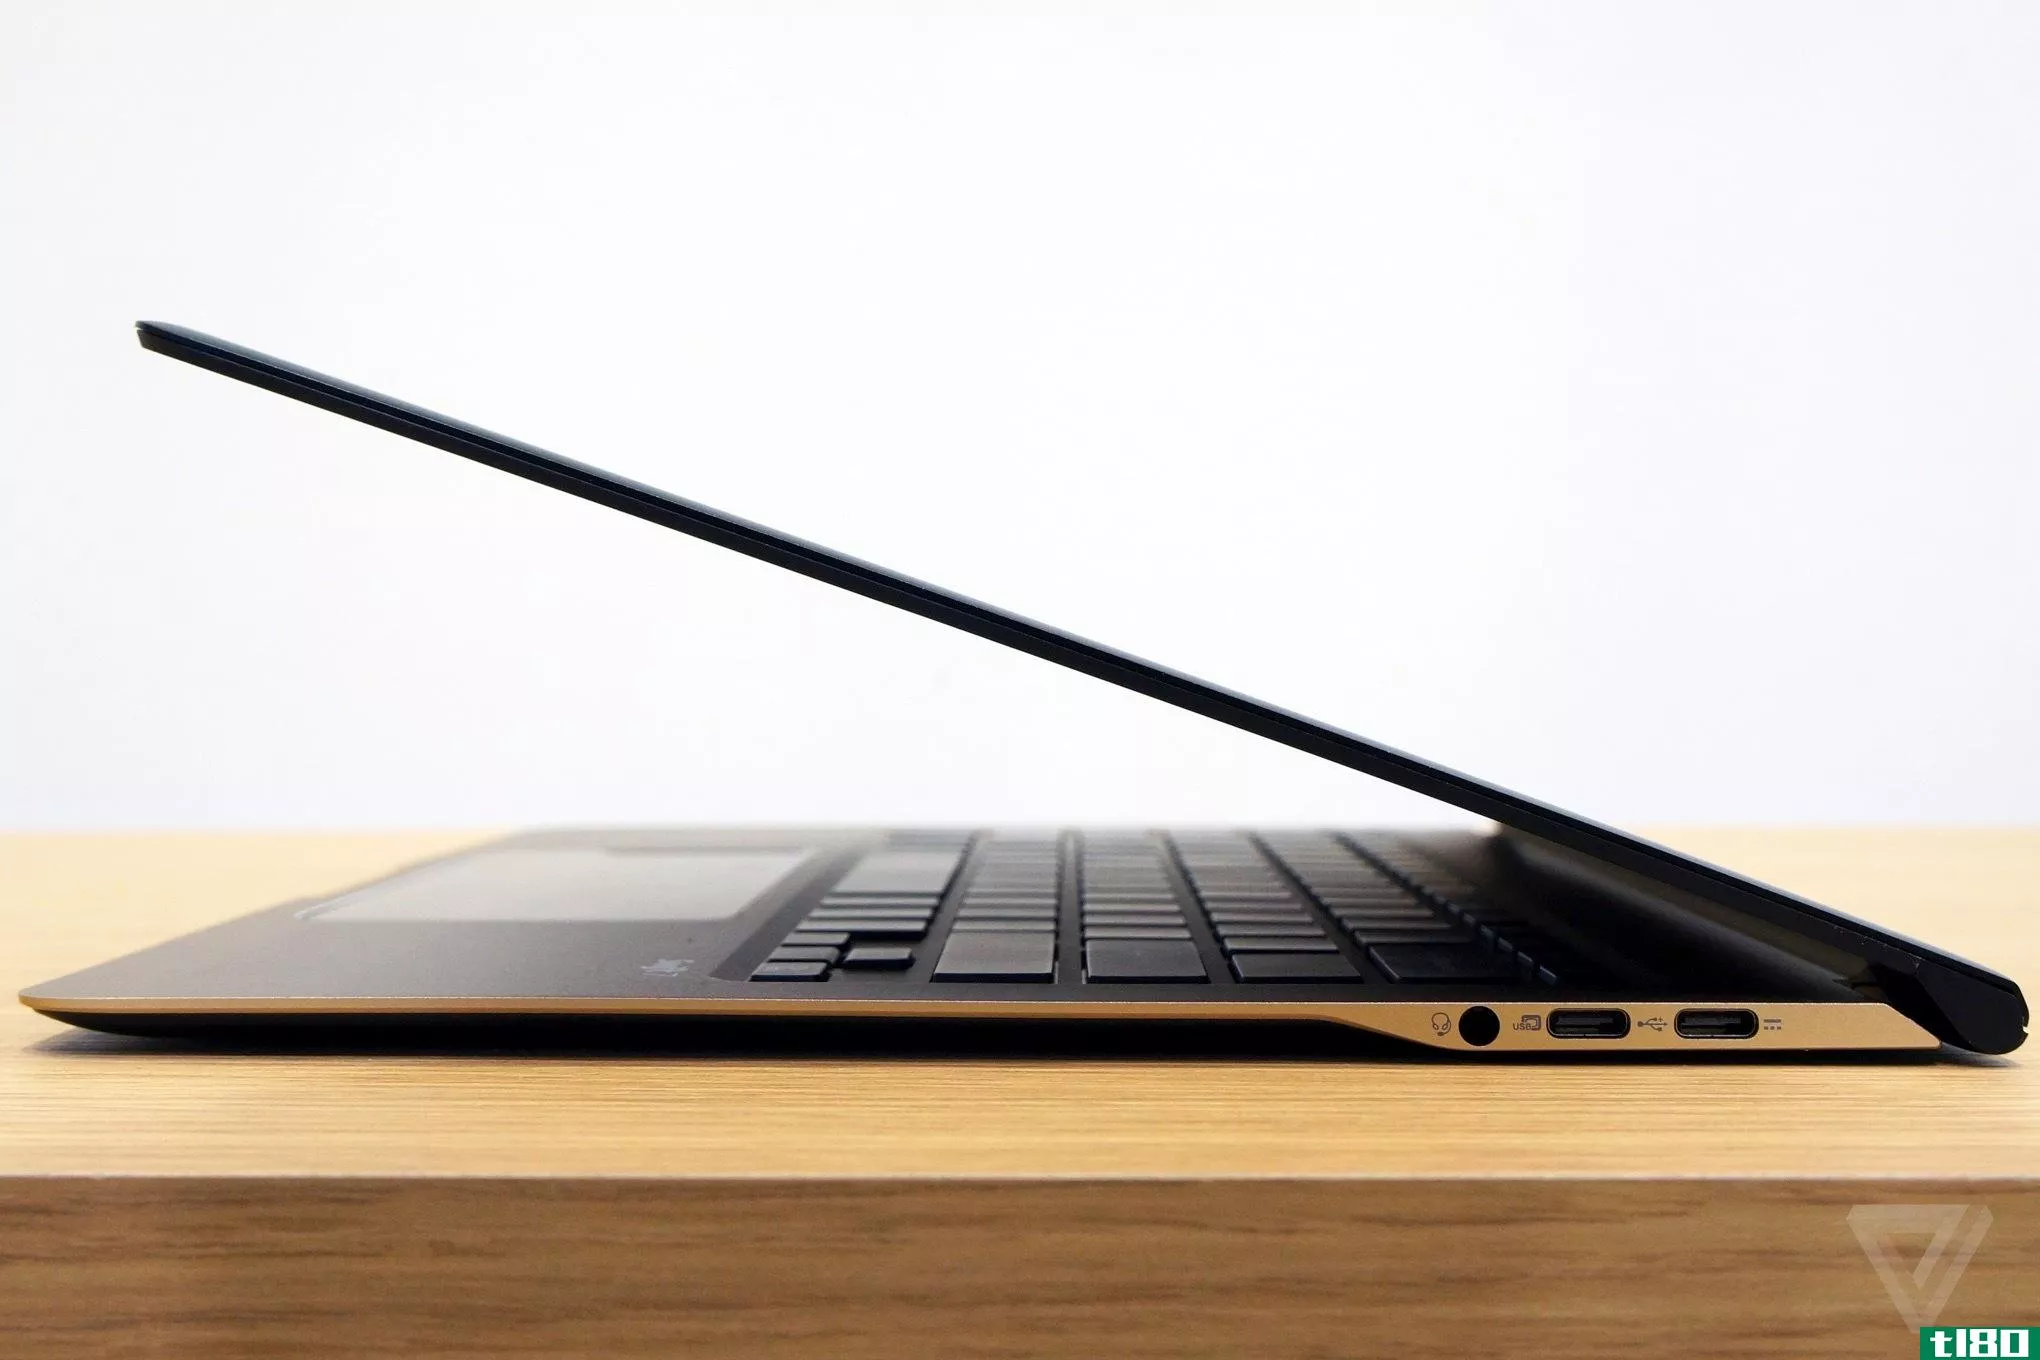 宏碁的swift7是第一款厚度小于1厘米的笔记本电脑